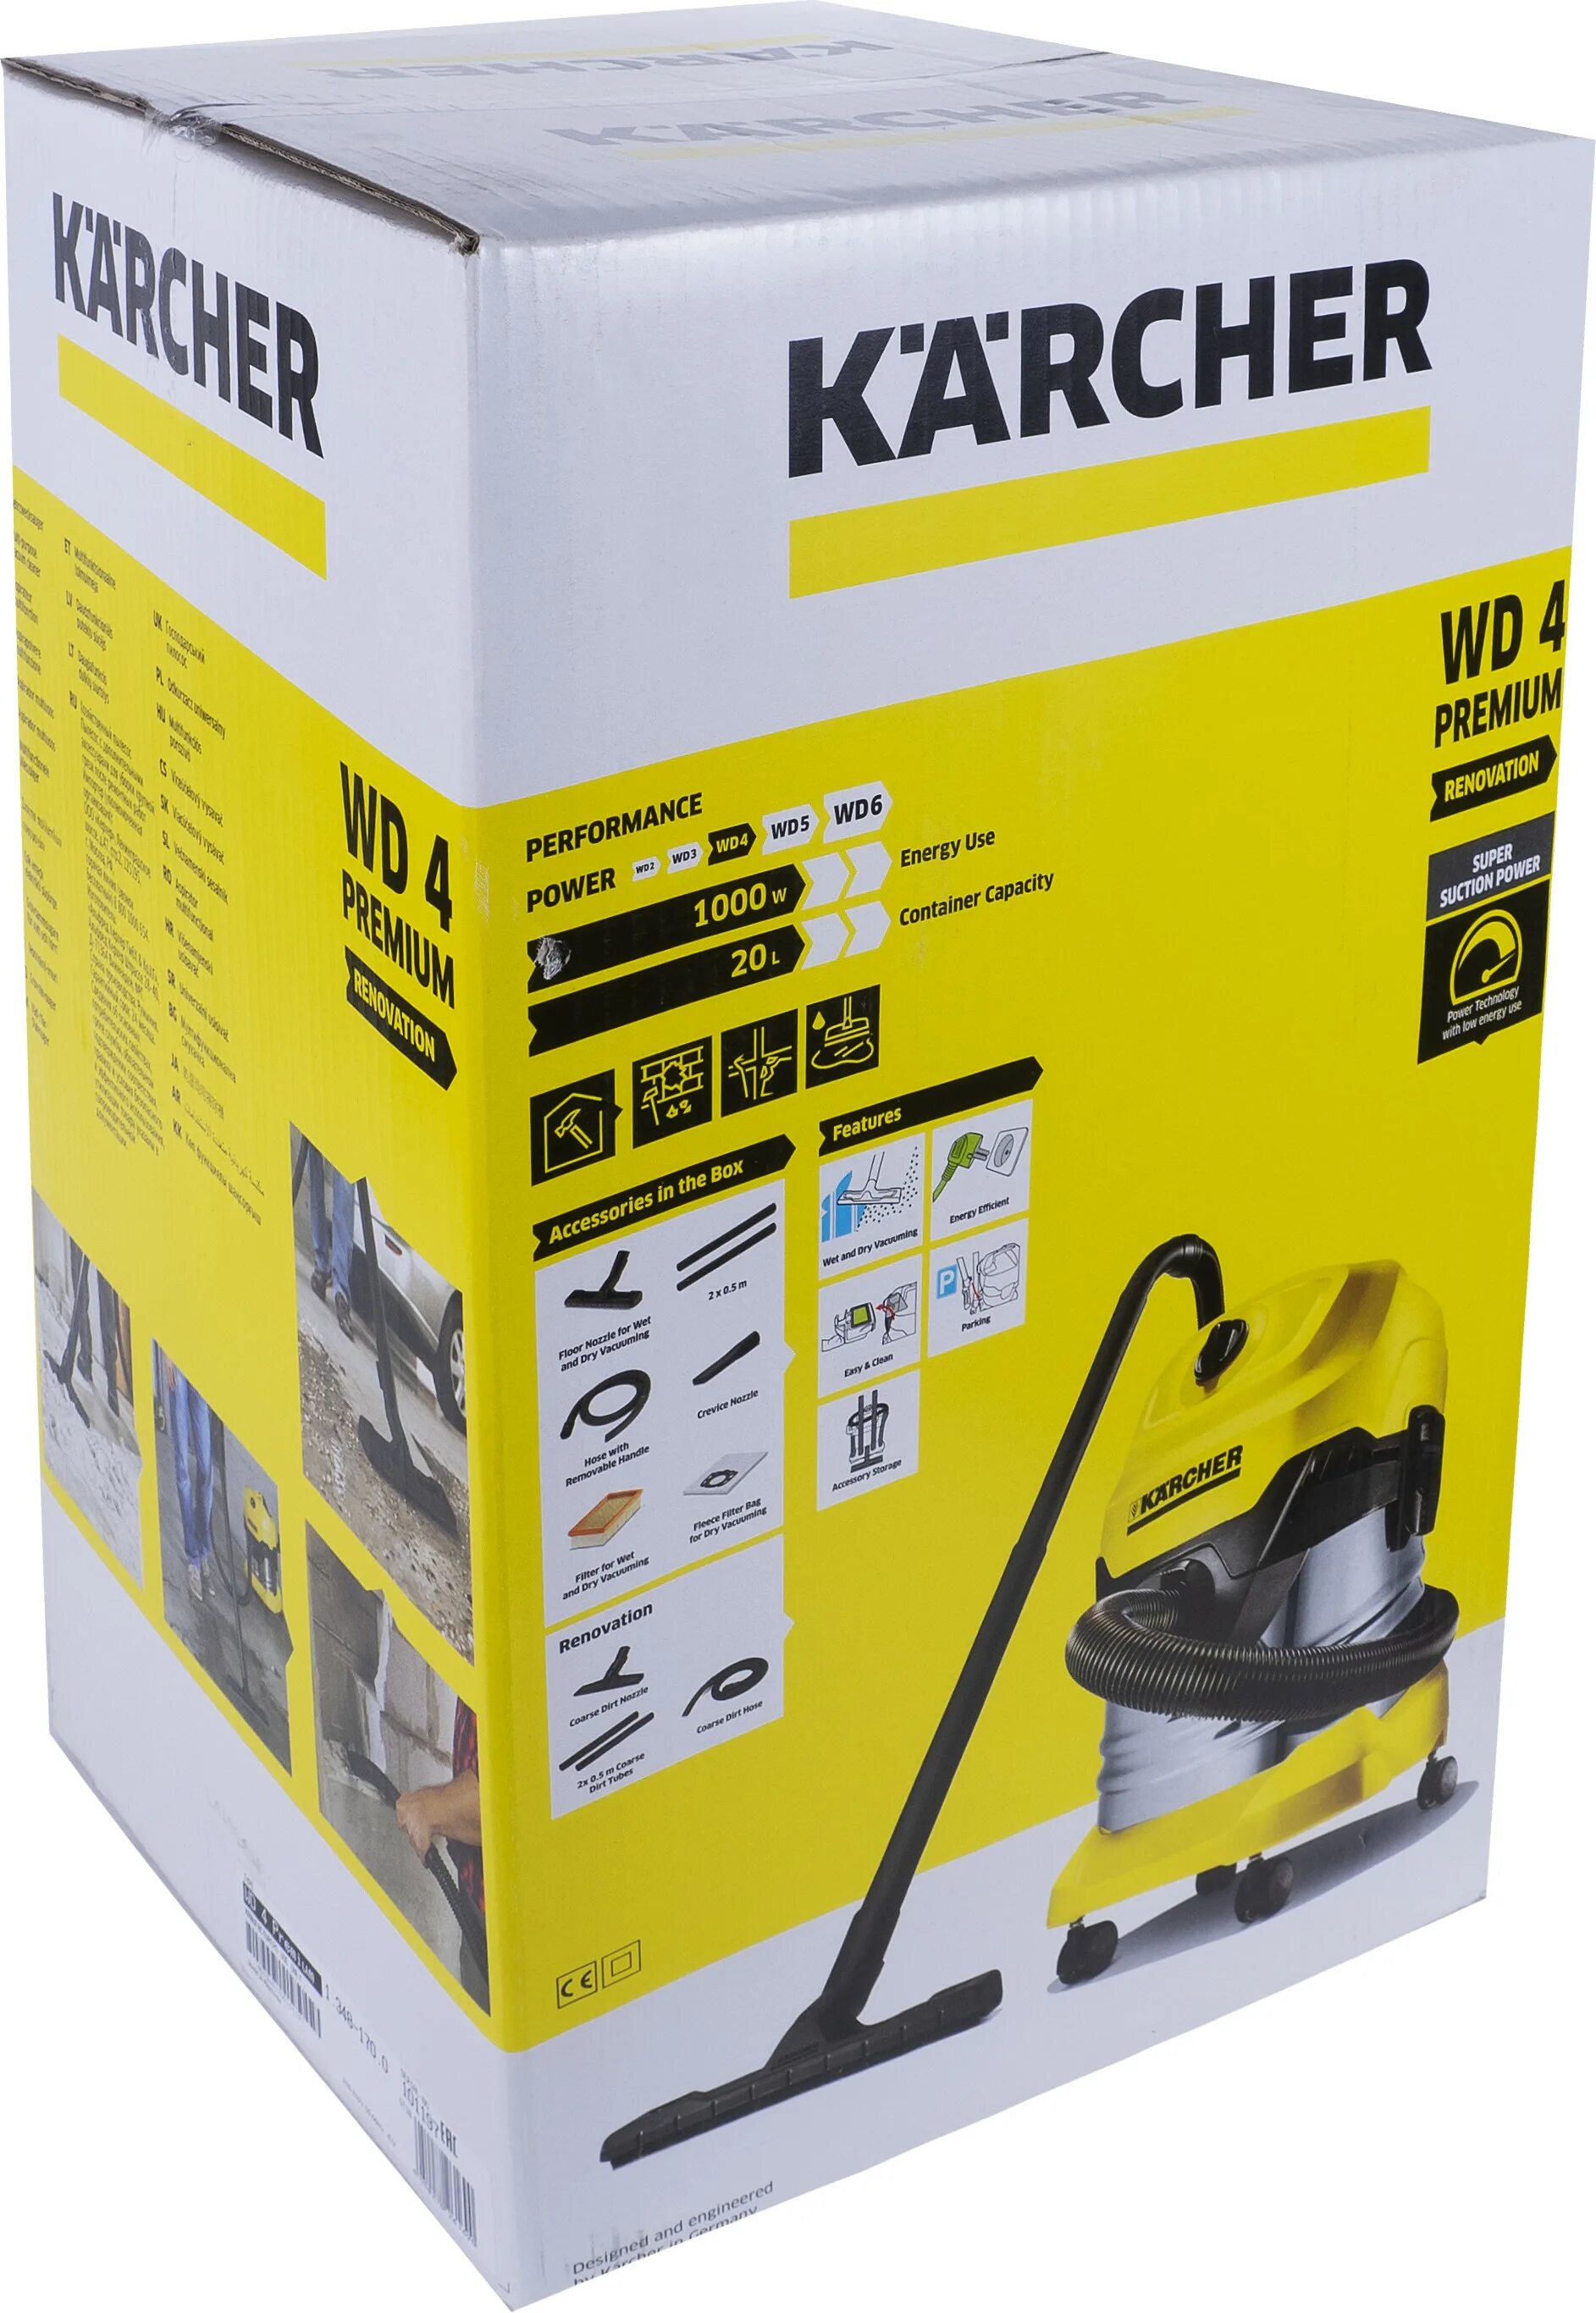 Строительный пылесос Керхер WD 4. Karcher WD 4 Premium. Керхер строительный вд4. Пылесос Керхер 20л.